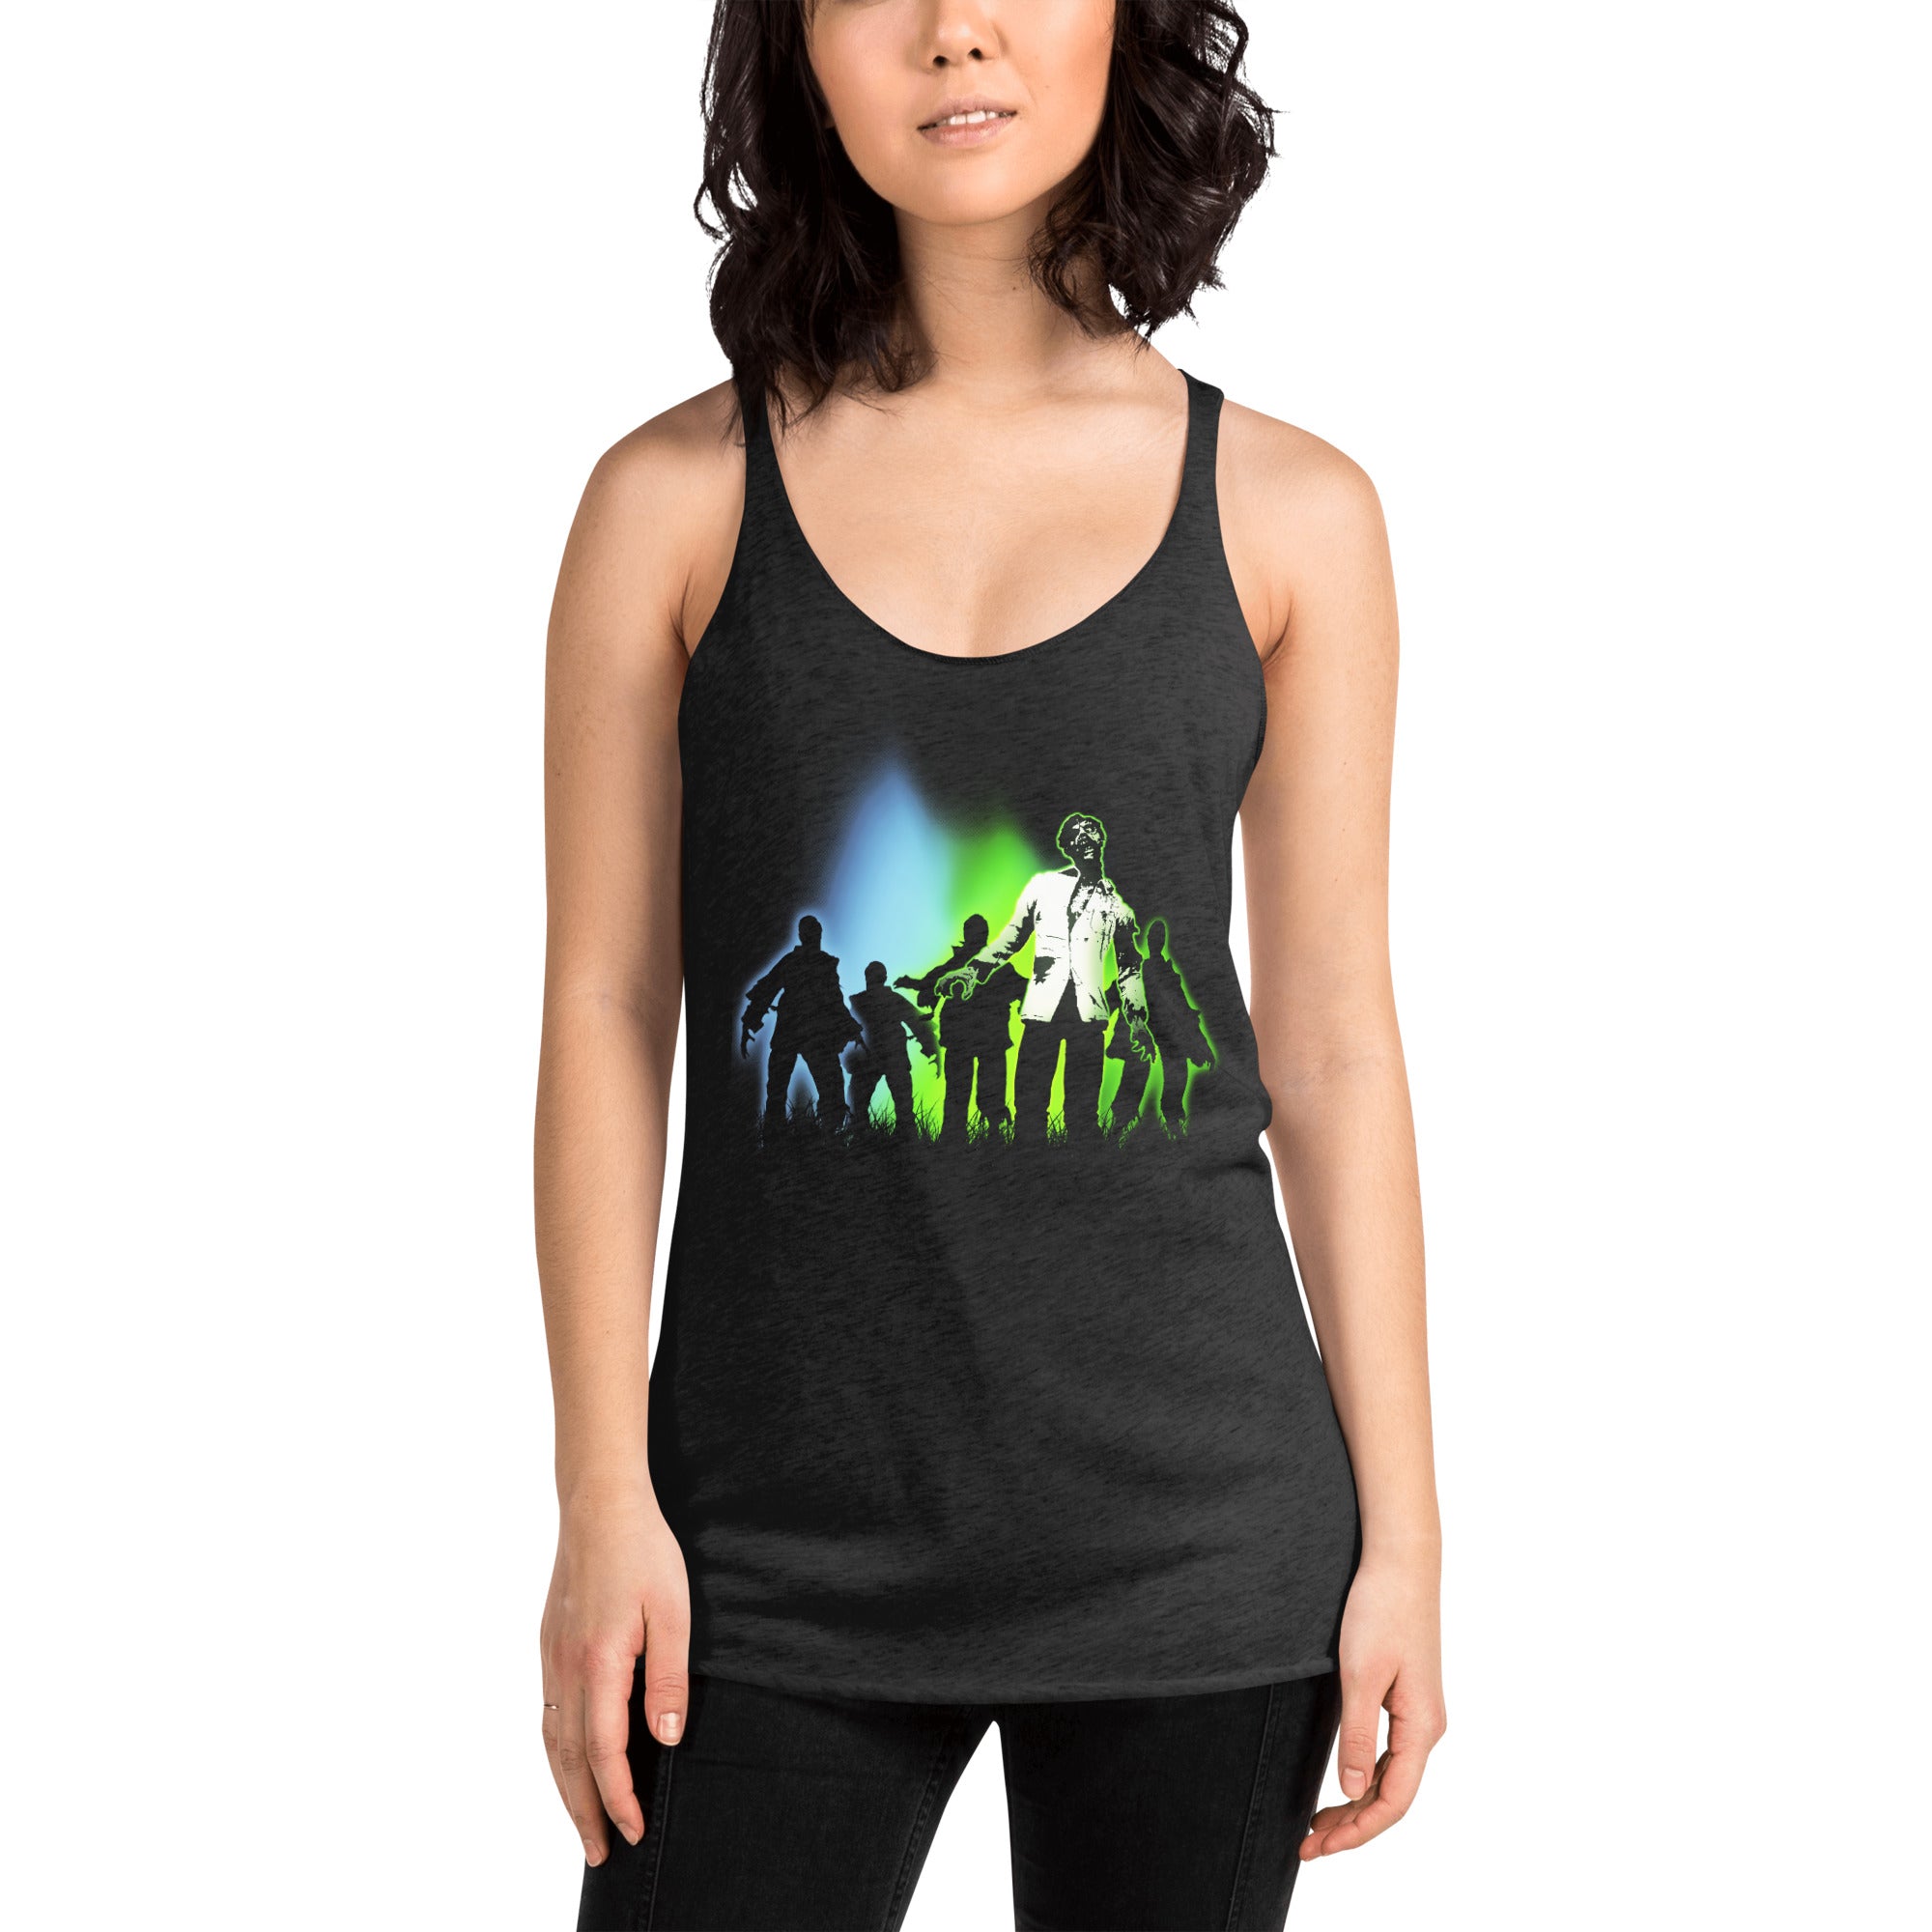 Radioactive Walking Dead Zombie Horde Women's Racerback Tank Top Shirt - Edge of Life Designs